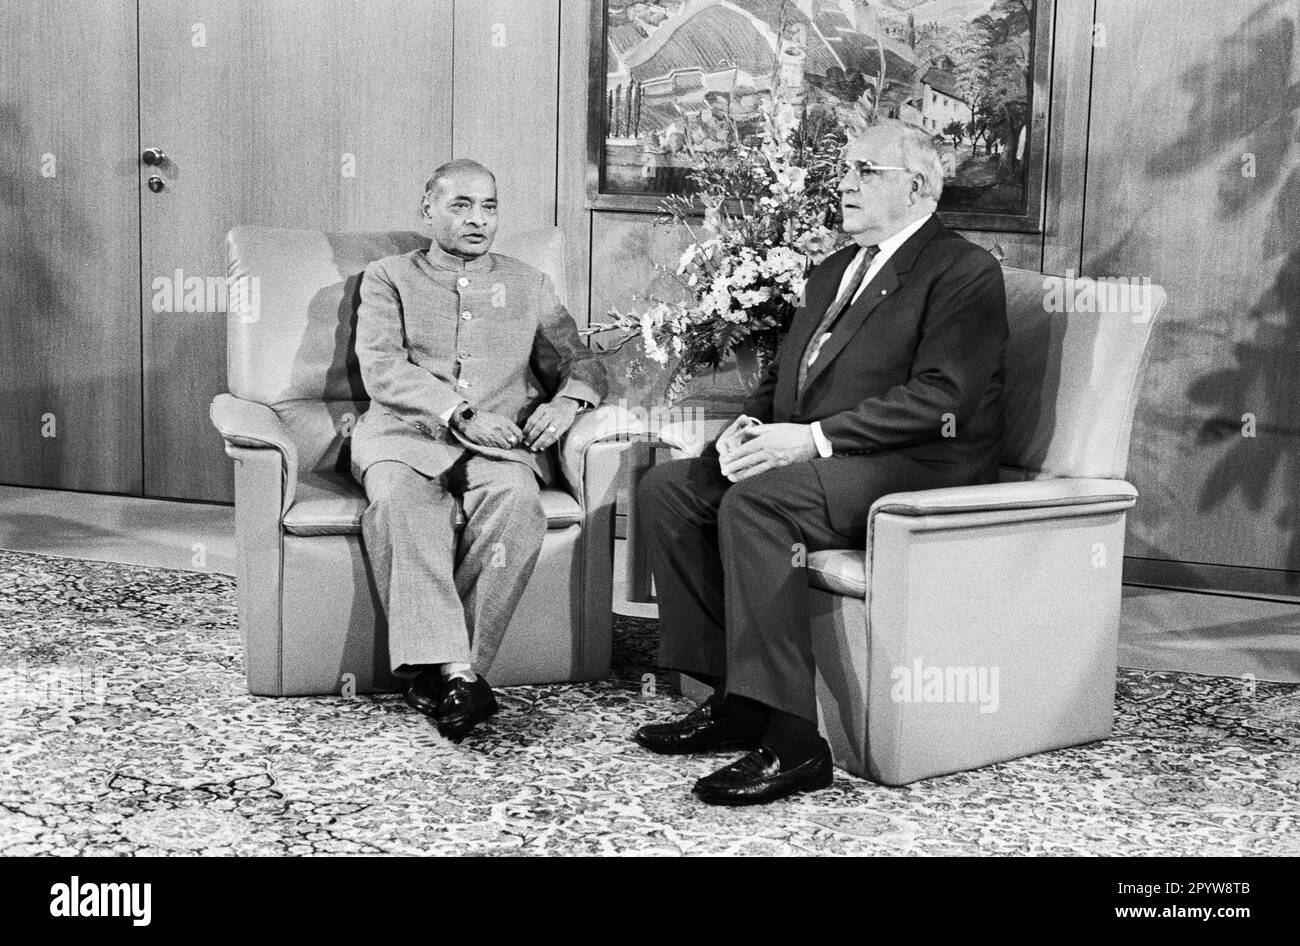 Allemagne, Bonn, 06.09.1991. Archive: 28-36-15 Premier ministre de l'Inde en visite photo: Chancelier fédéral Helmut Kohl et Narasimha Rao [traduction automatique] Banque D'Images